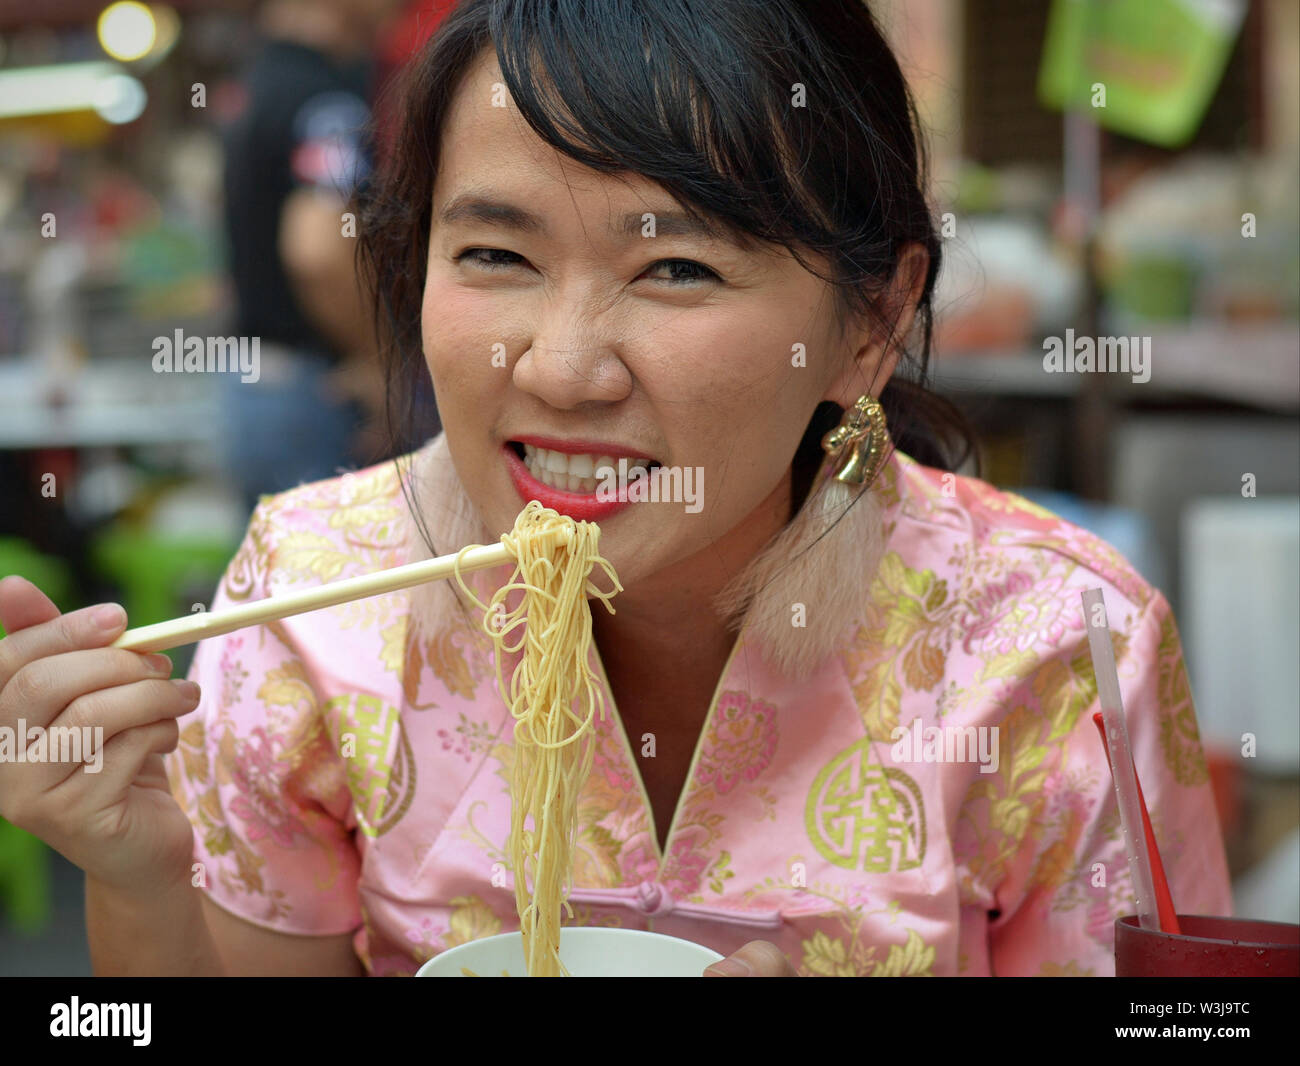 Kostümierte Thai chinesische Frau mit Falten Nase isst gelben Nudeln mit  Stäbchen während des chinesischen neuen Jahres Stockfotografie - Alamy